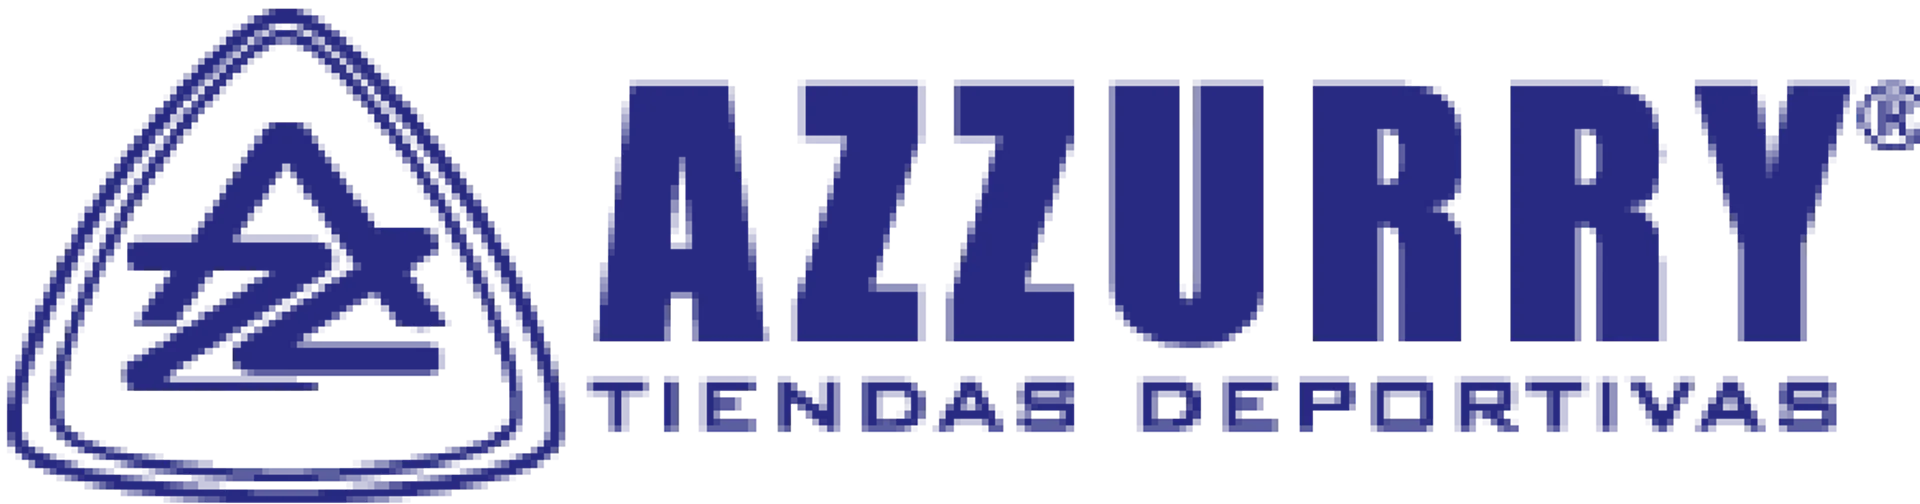 AZZURRY logo